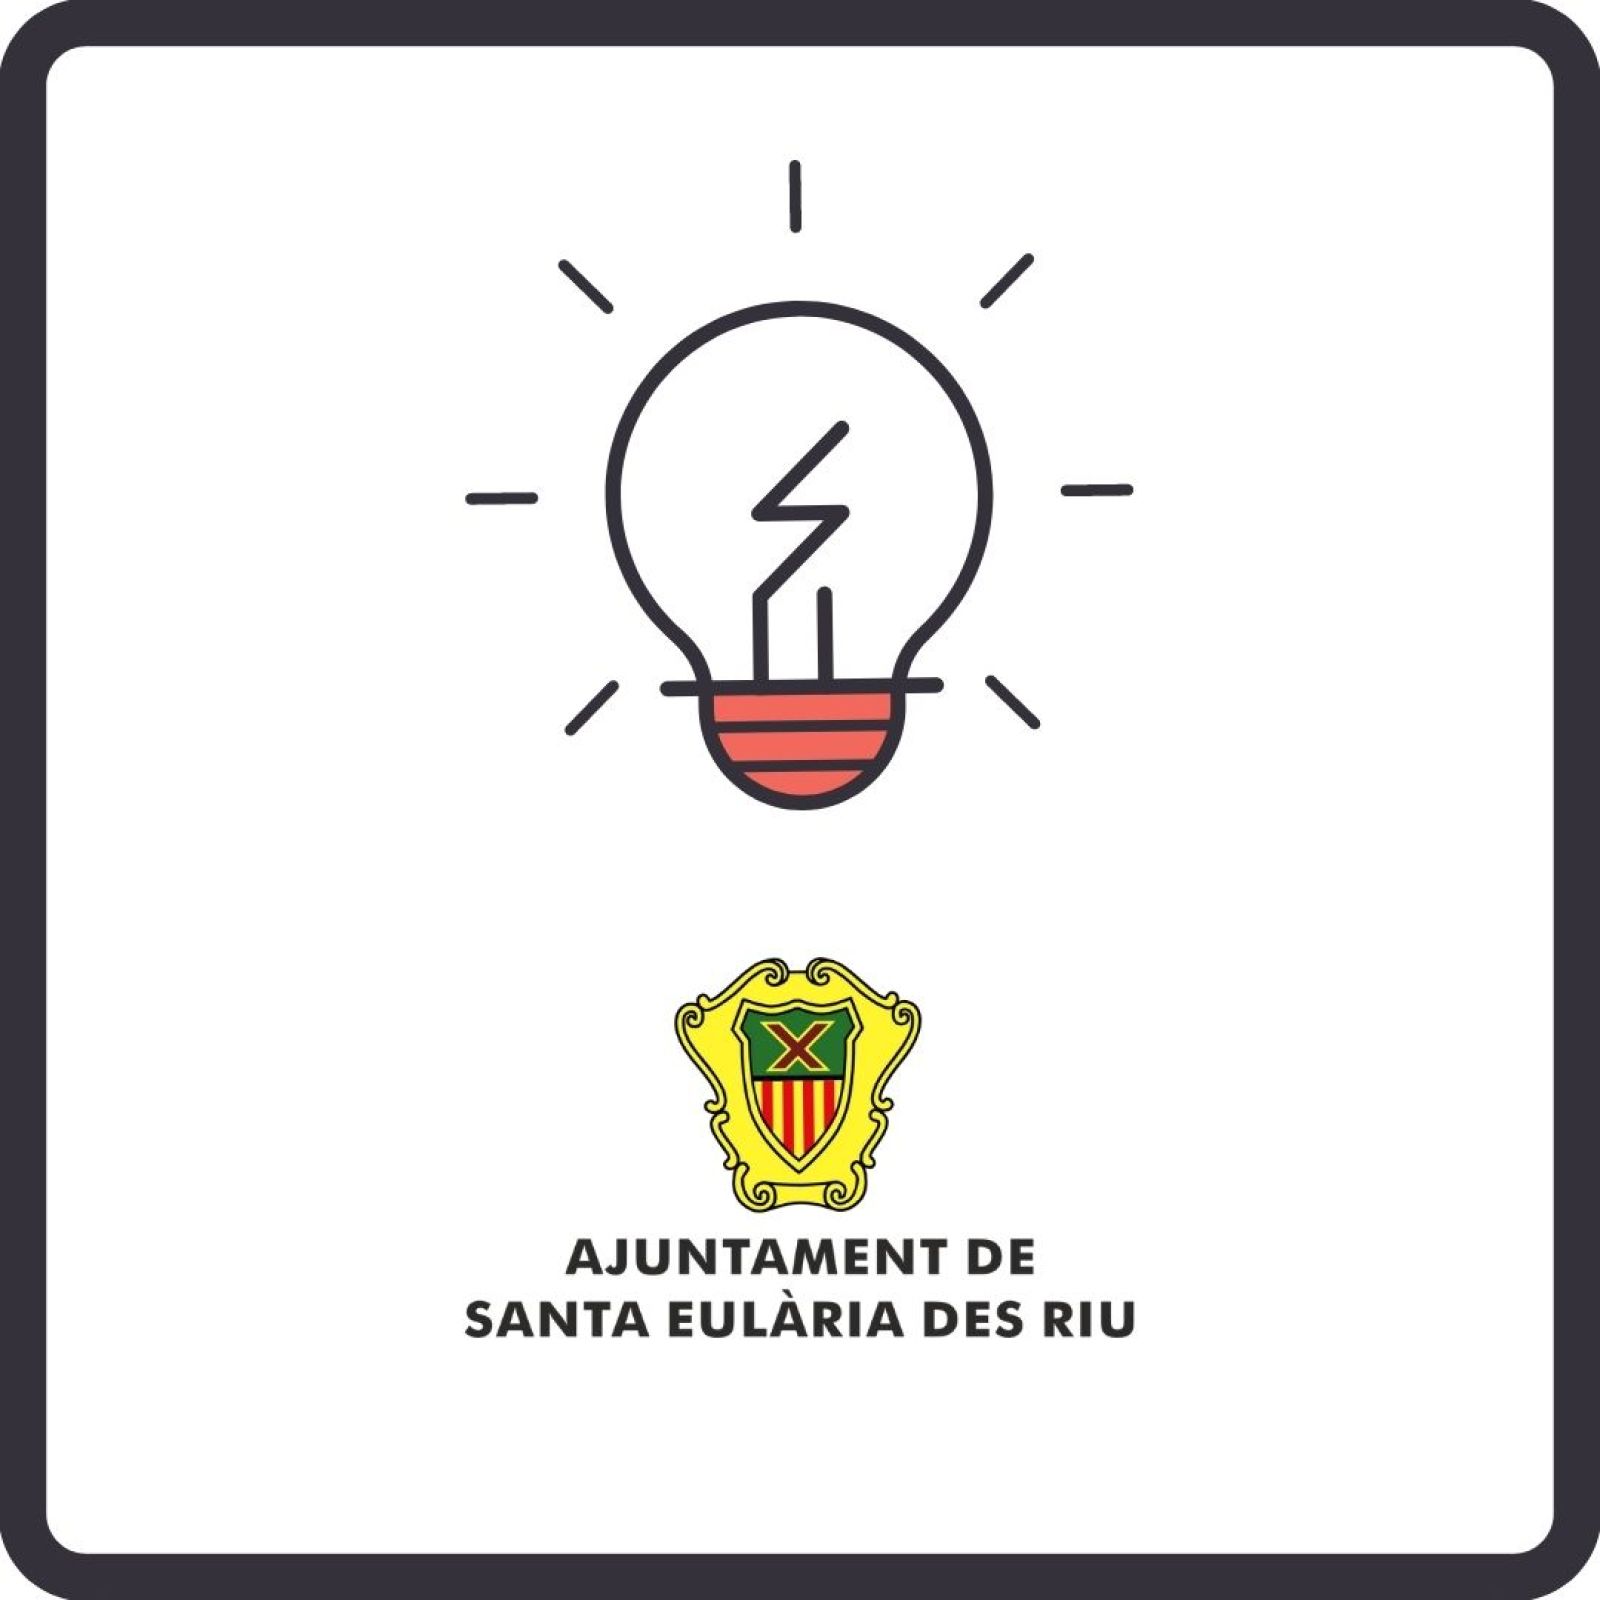 Corte temporal del suministro de energía eléctrica en diferentes zonas de Santa Eulària des Riu los días 17 y 18 de marzo.